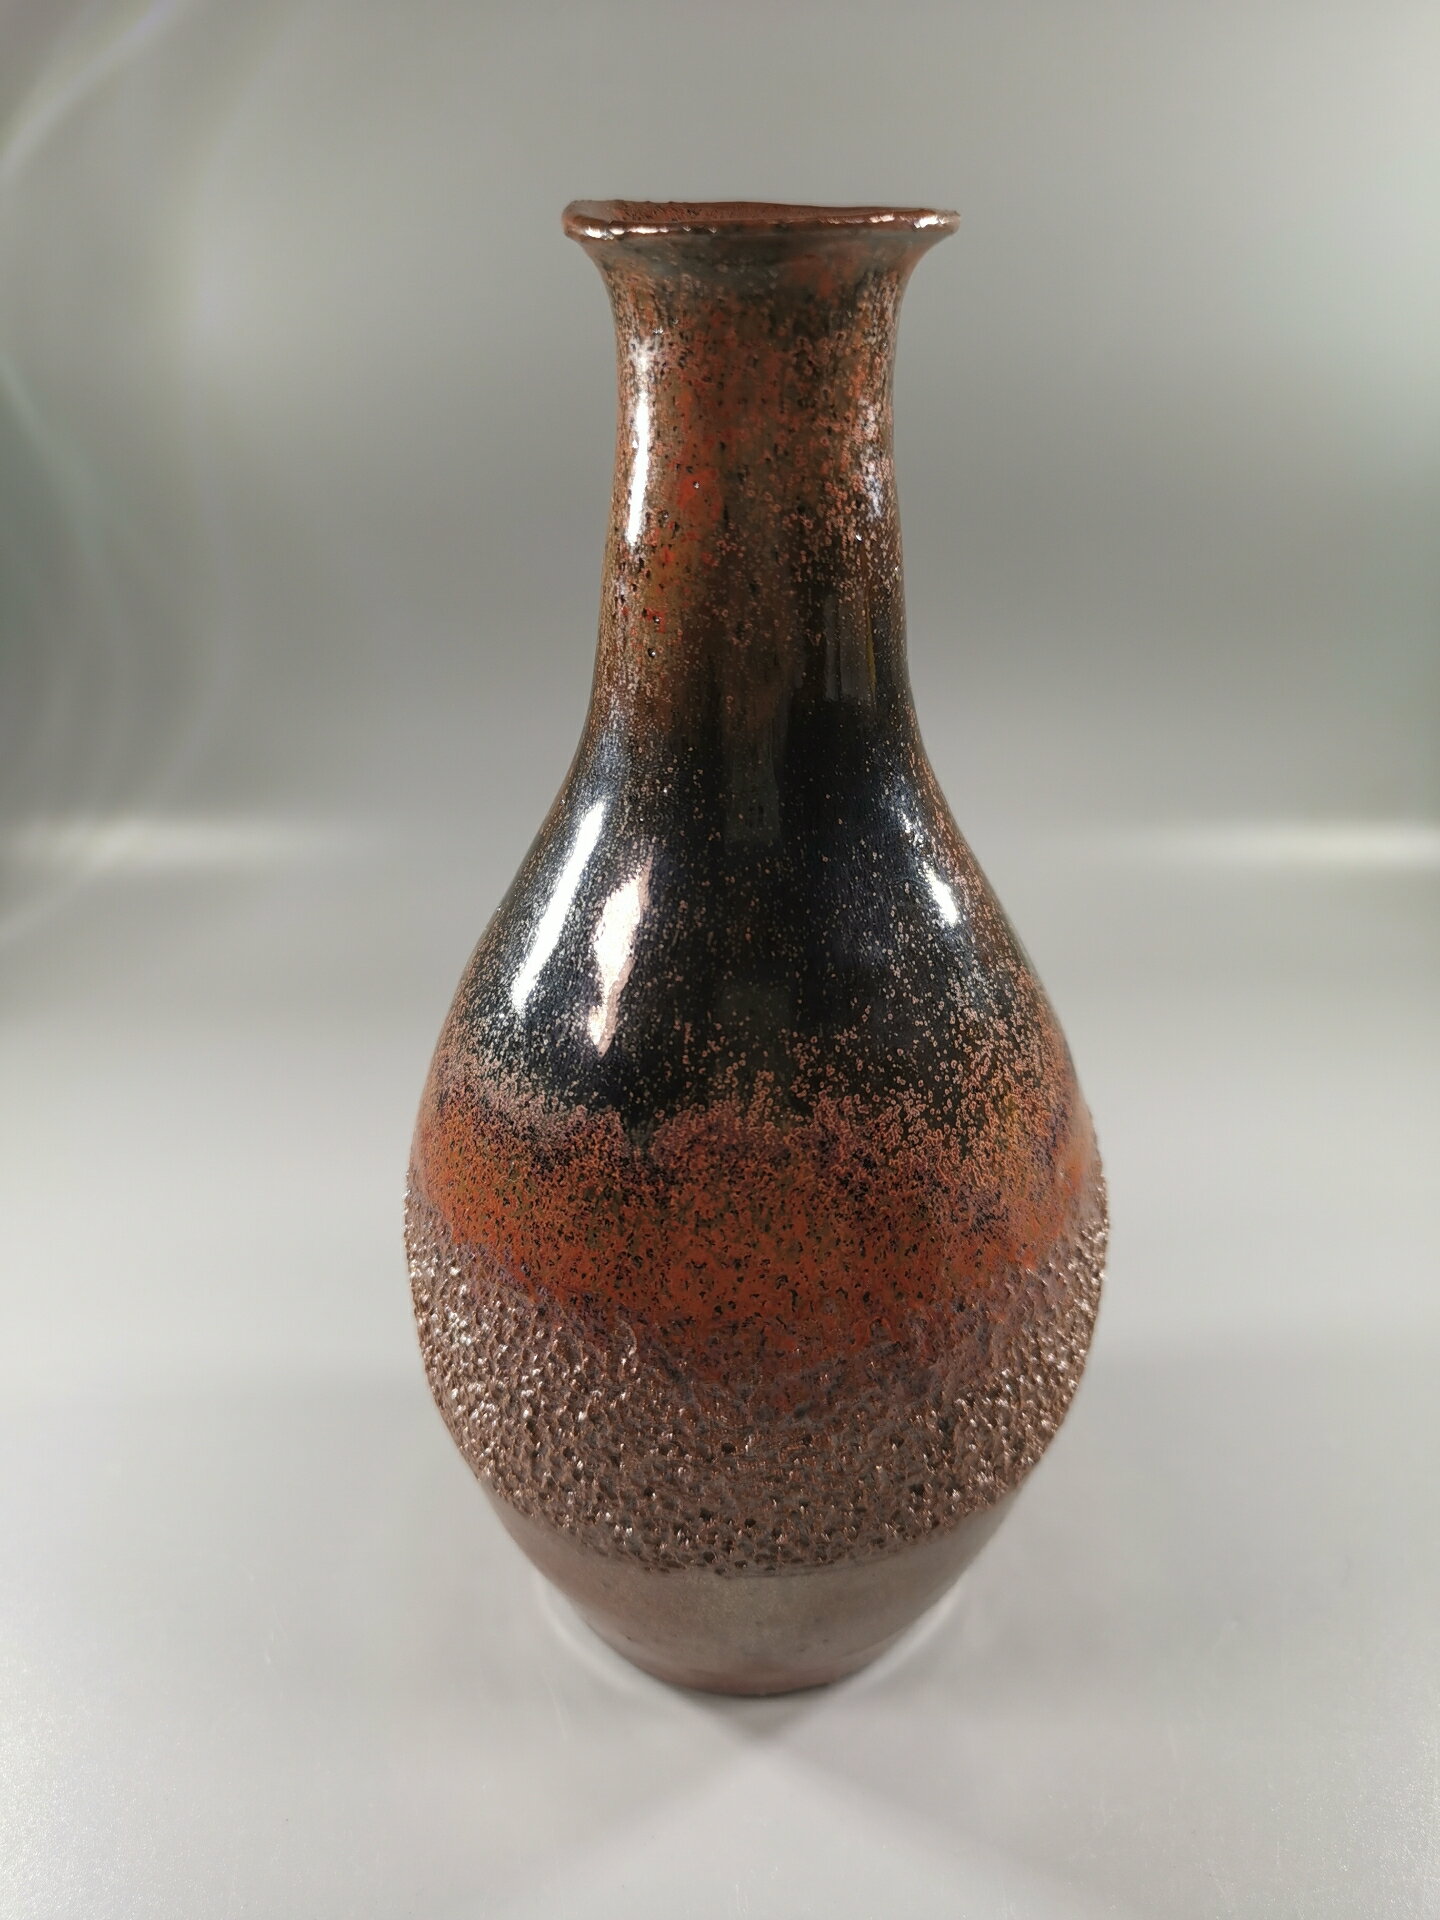 日本回流鐵釉花瓶 花入 小觀音瓶，鐵釉褐色瓶身圓形分布黑釉和